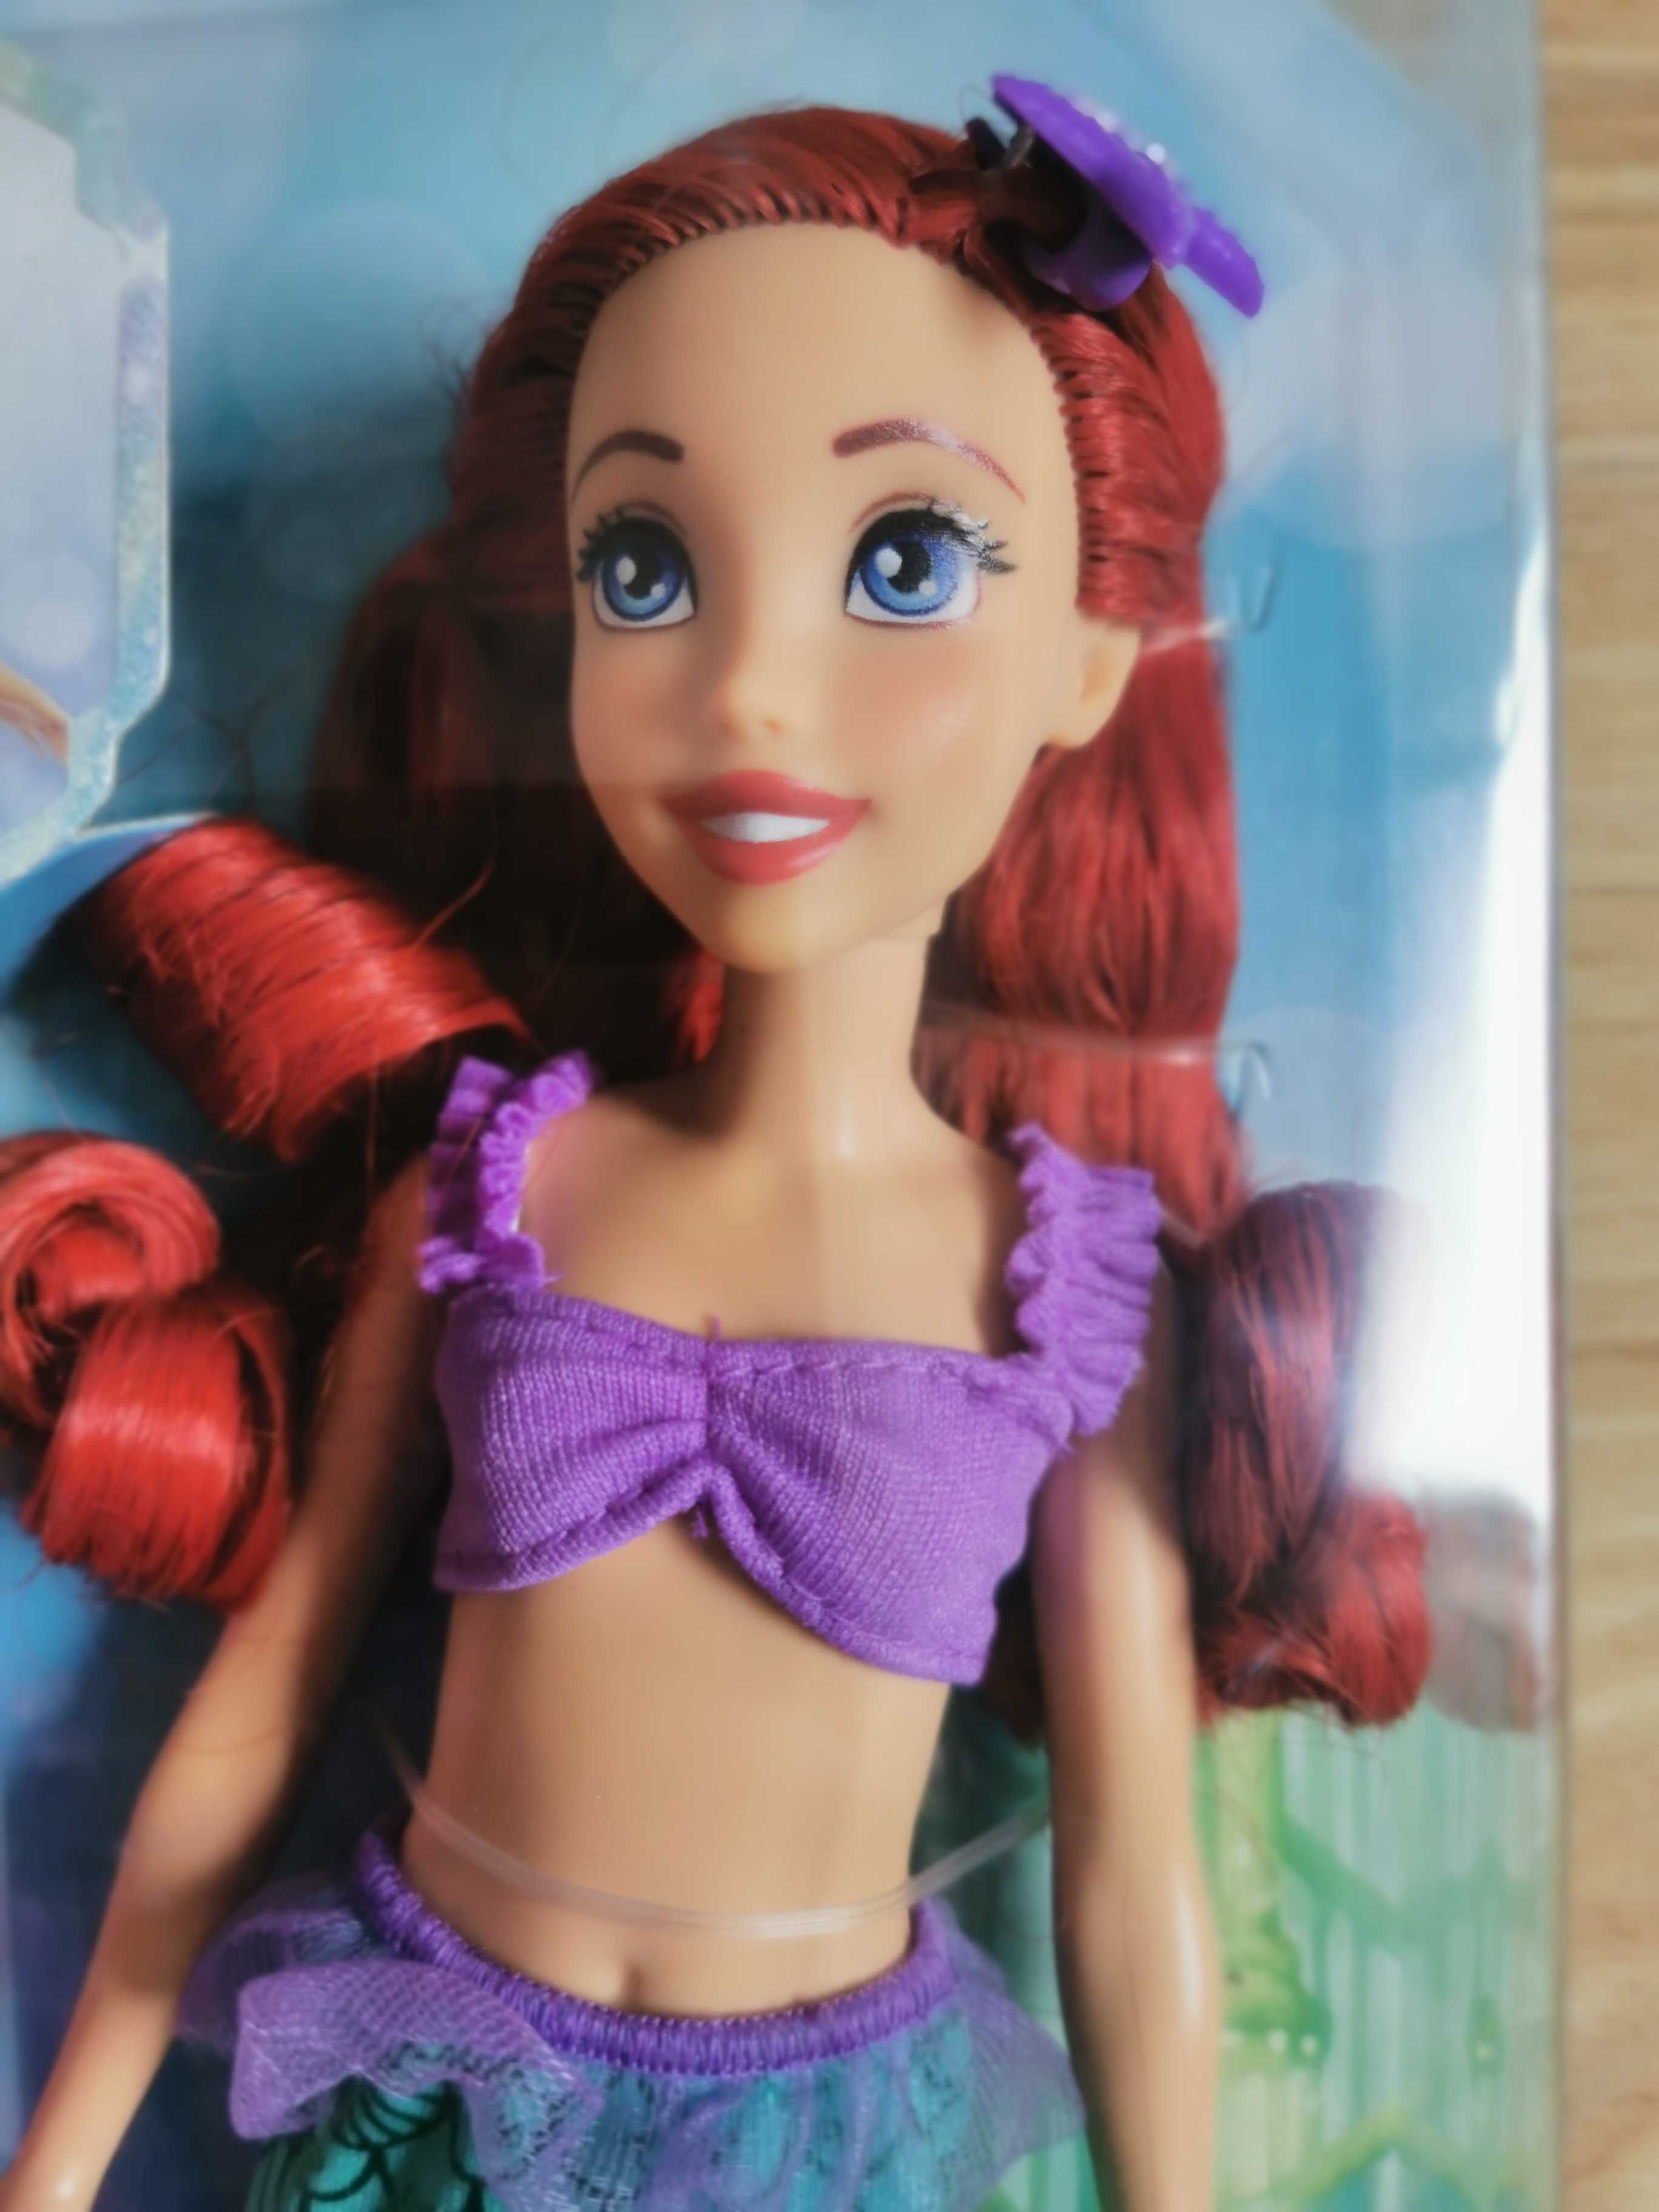 Lalka Ariel z kolekcji Disneya 3 +